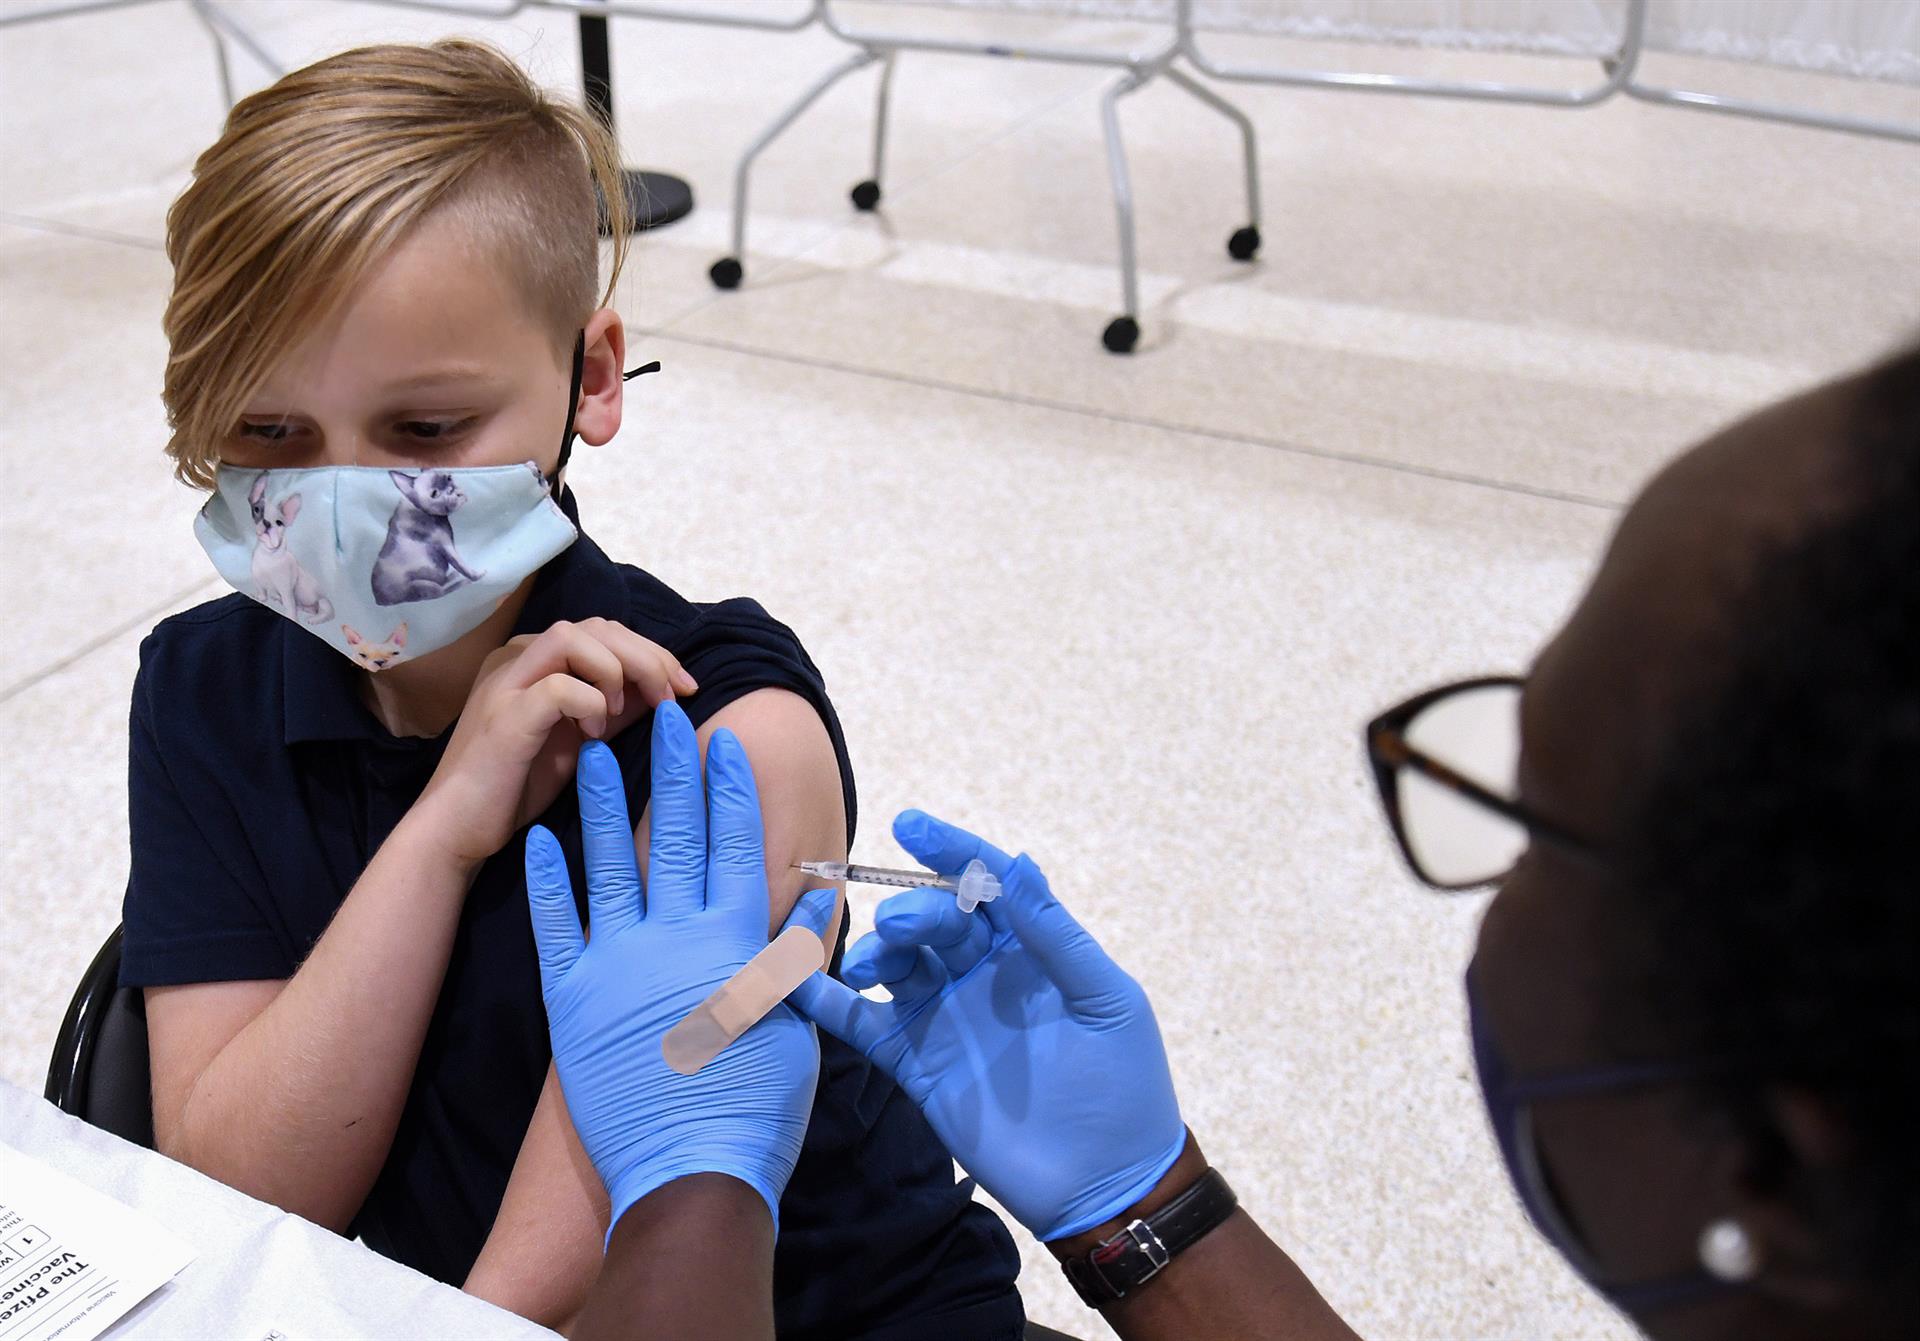 La EMA da el visto bueno a la vacuna de Pfizer en niños de 5 a 11 años